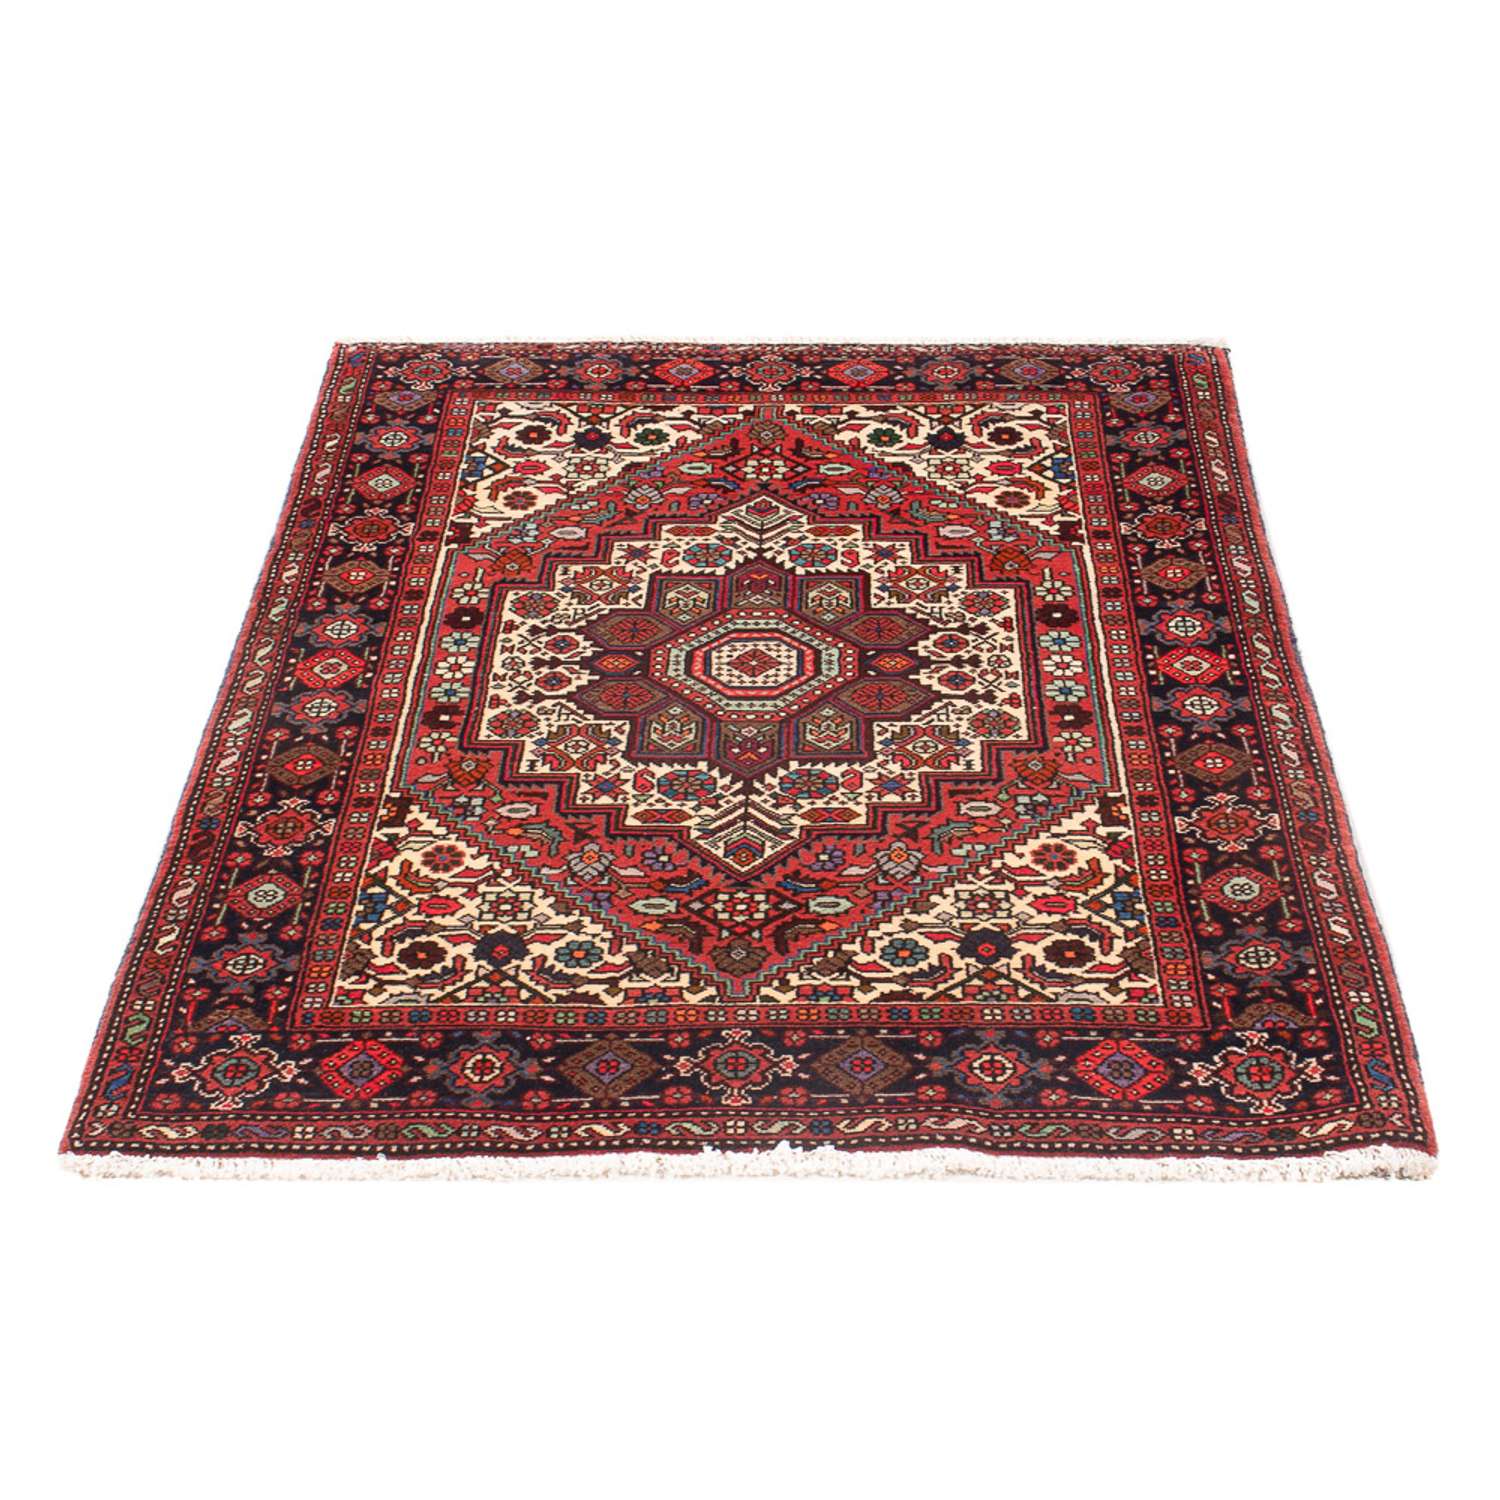 Perský koberec - Nomádský - 134 x 68 cm - světle červená